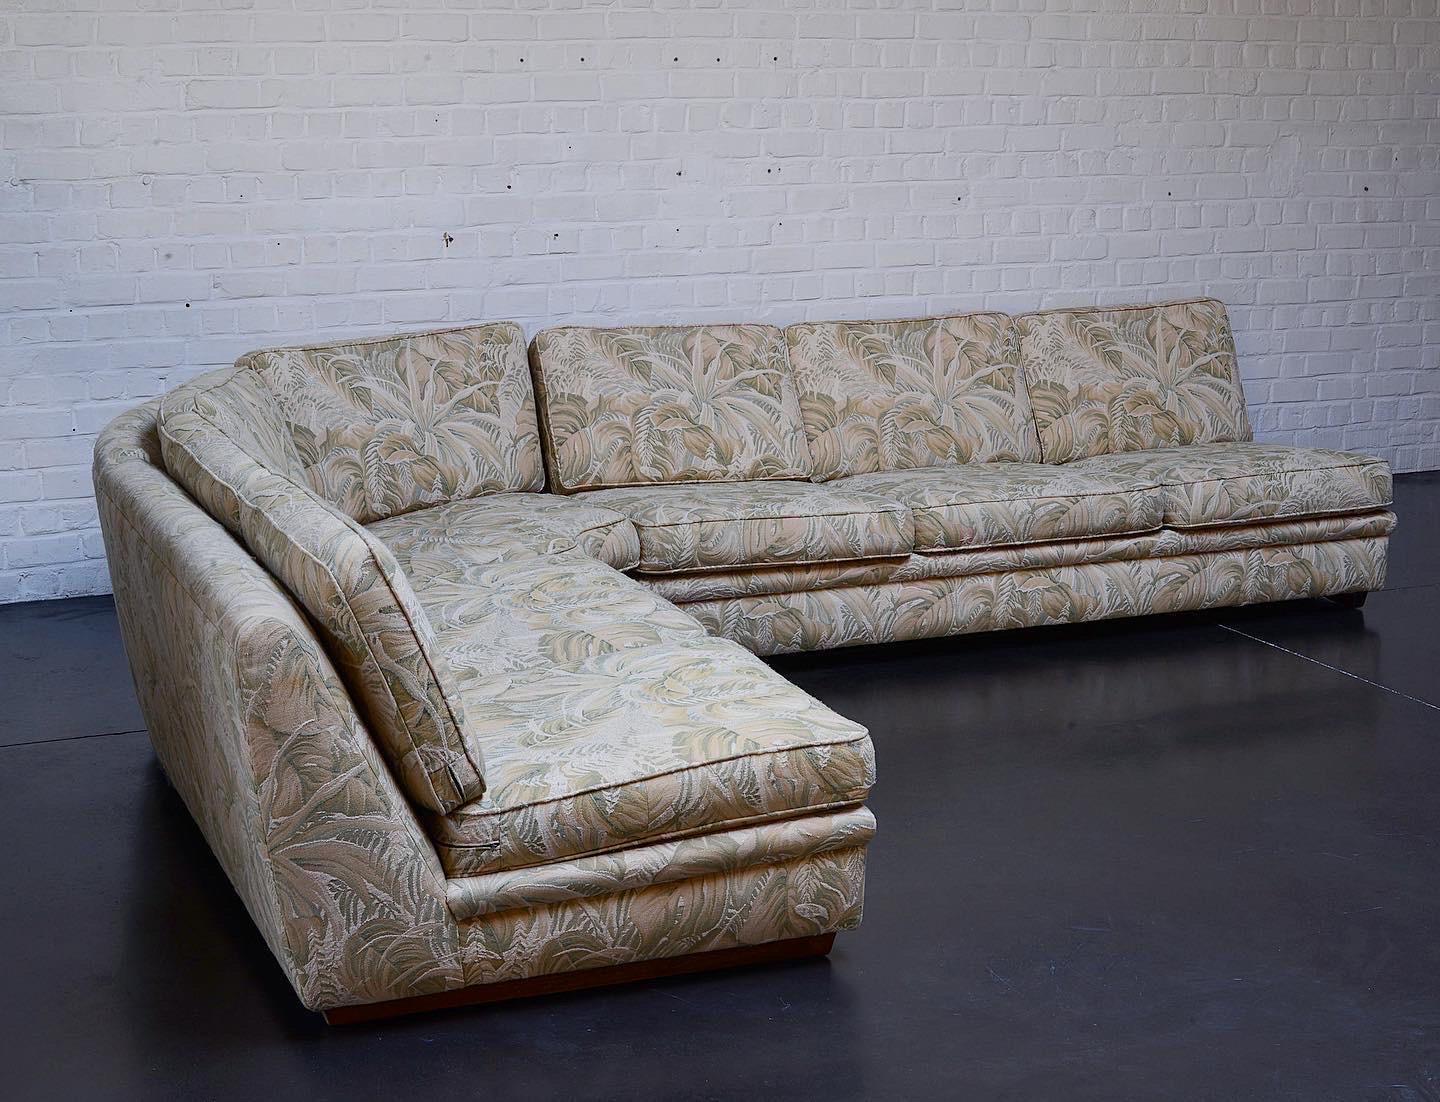 Canapé sectionnel en tissu épais et brodé Jungling fabriqué en Suède dans les années 70. Les pieds sont en bois dur. Il y a 3 éléments, un double siège + un trois sièges et un coin. Le tissu d'origine est toujours présent et dans un état